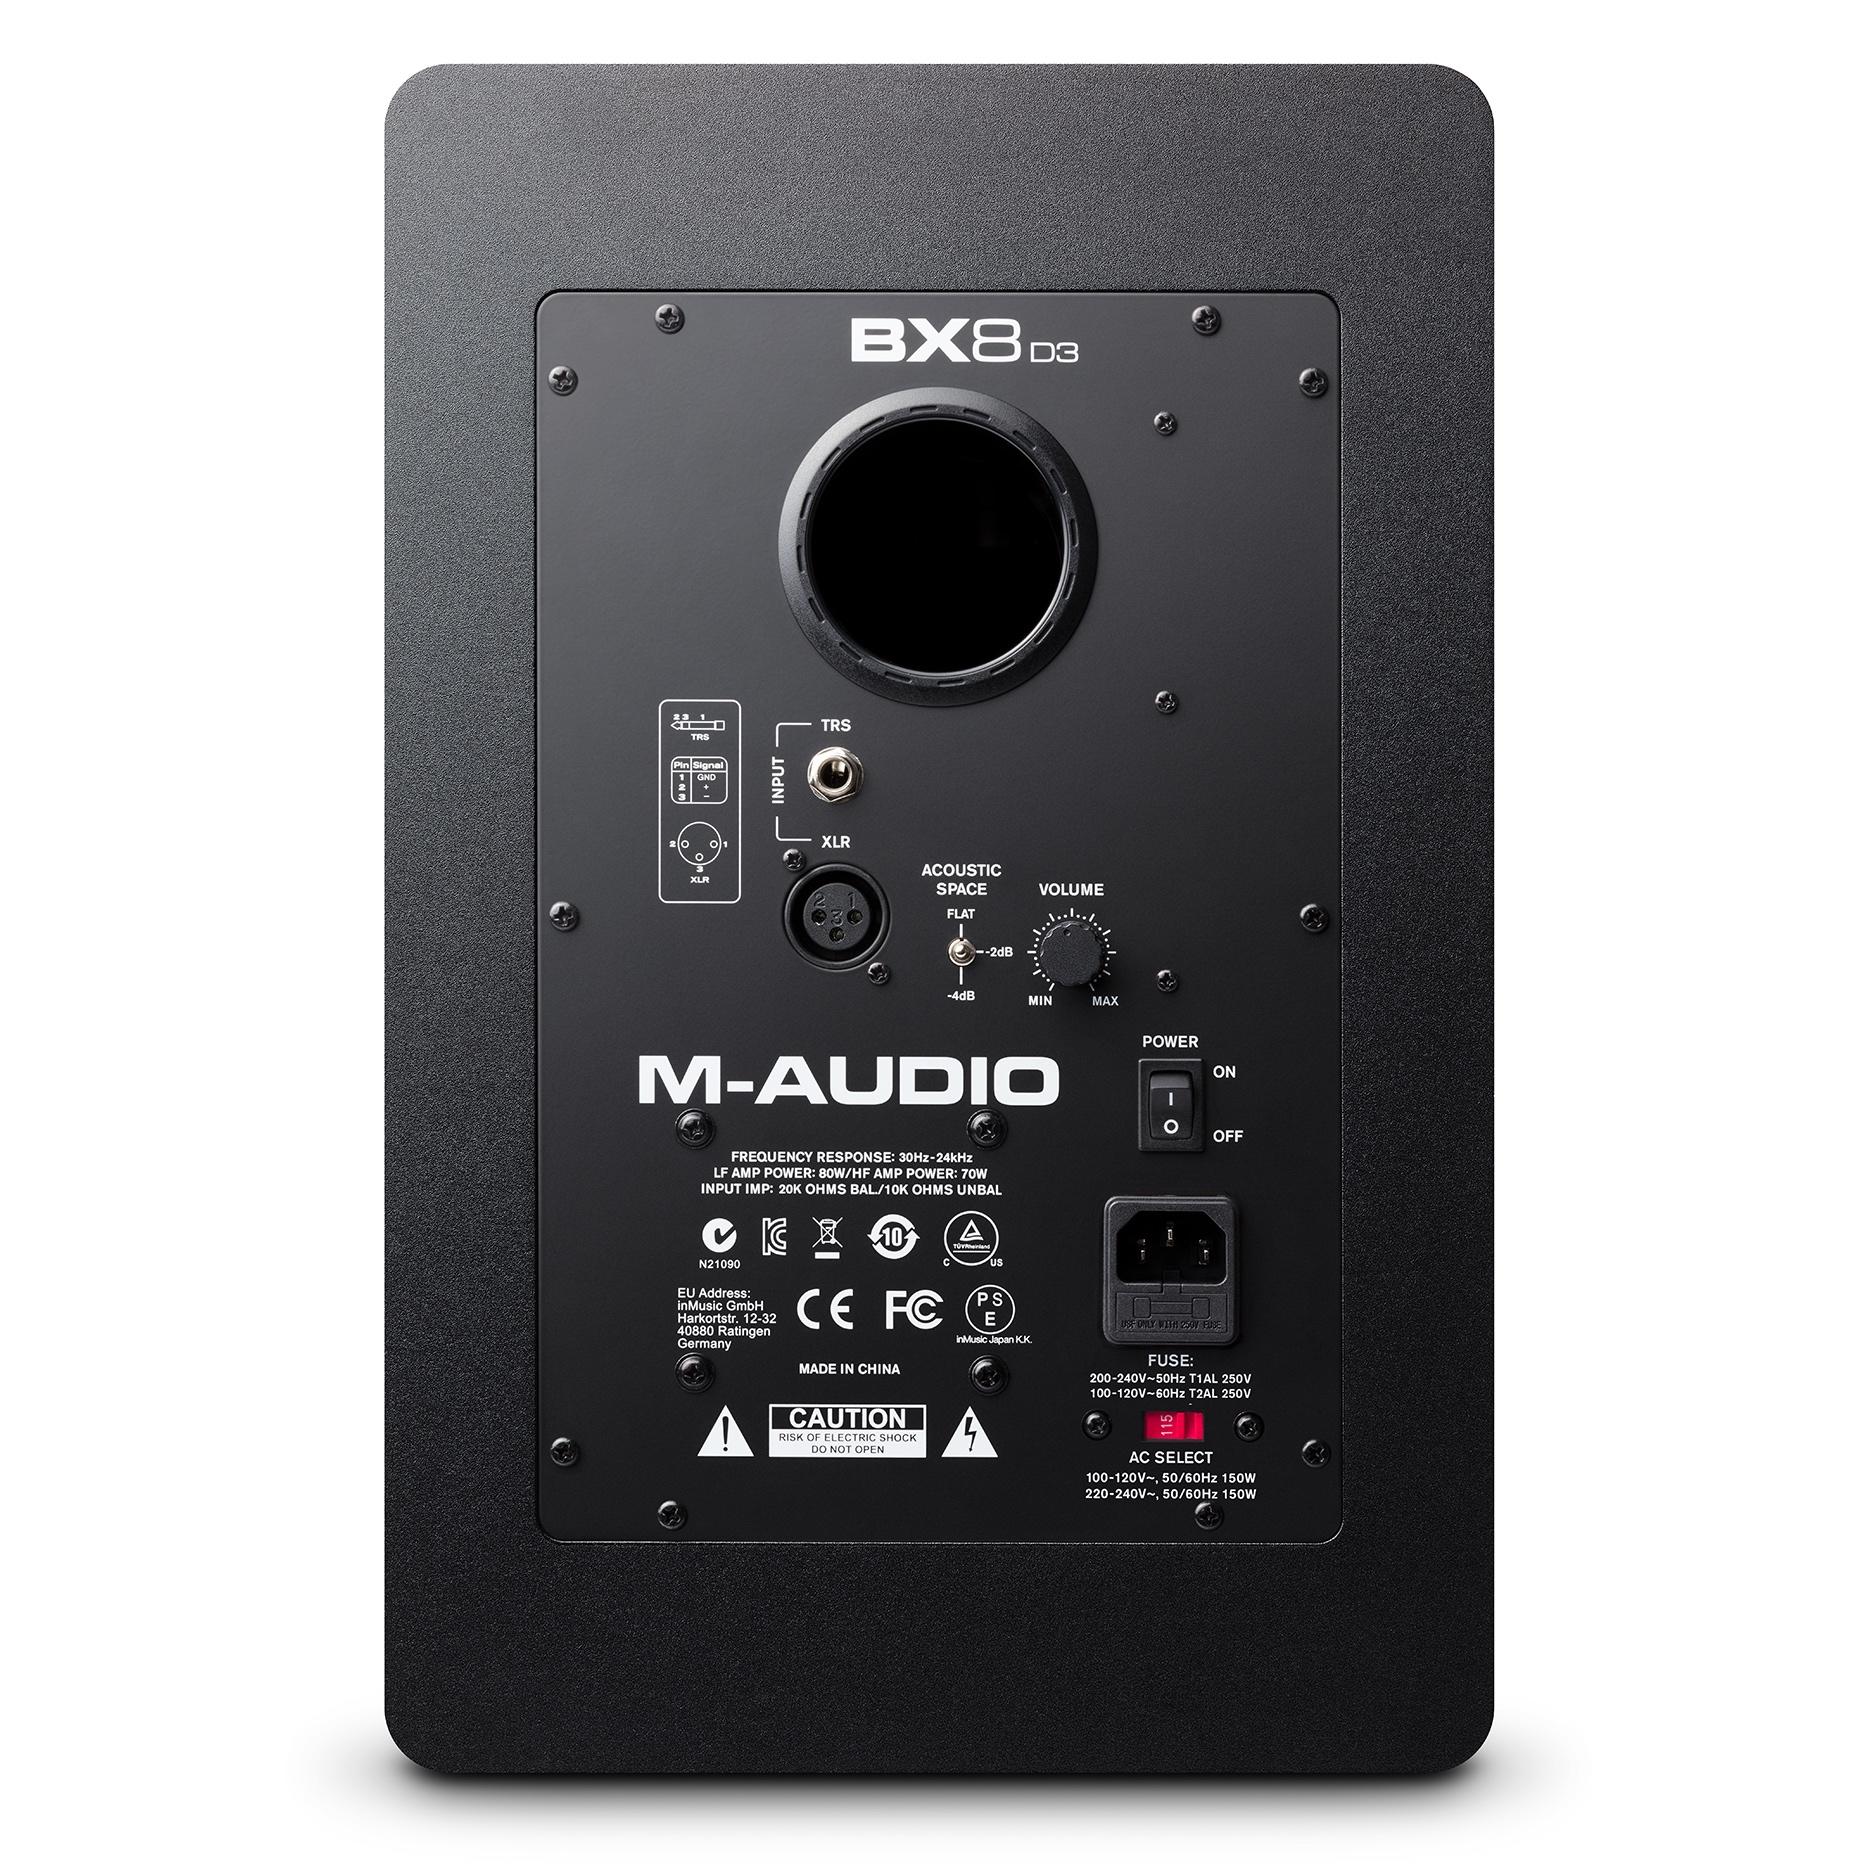 M Audio BX8 D3 rear